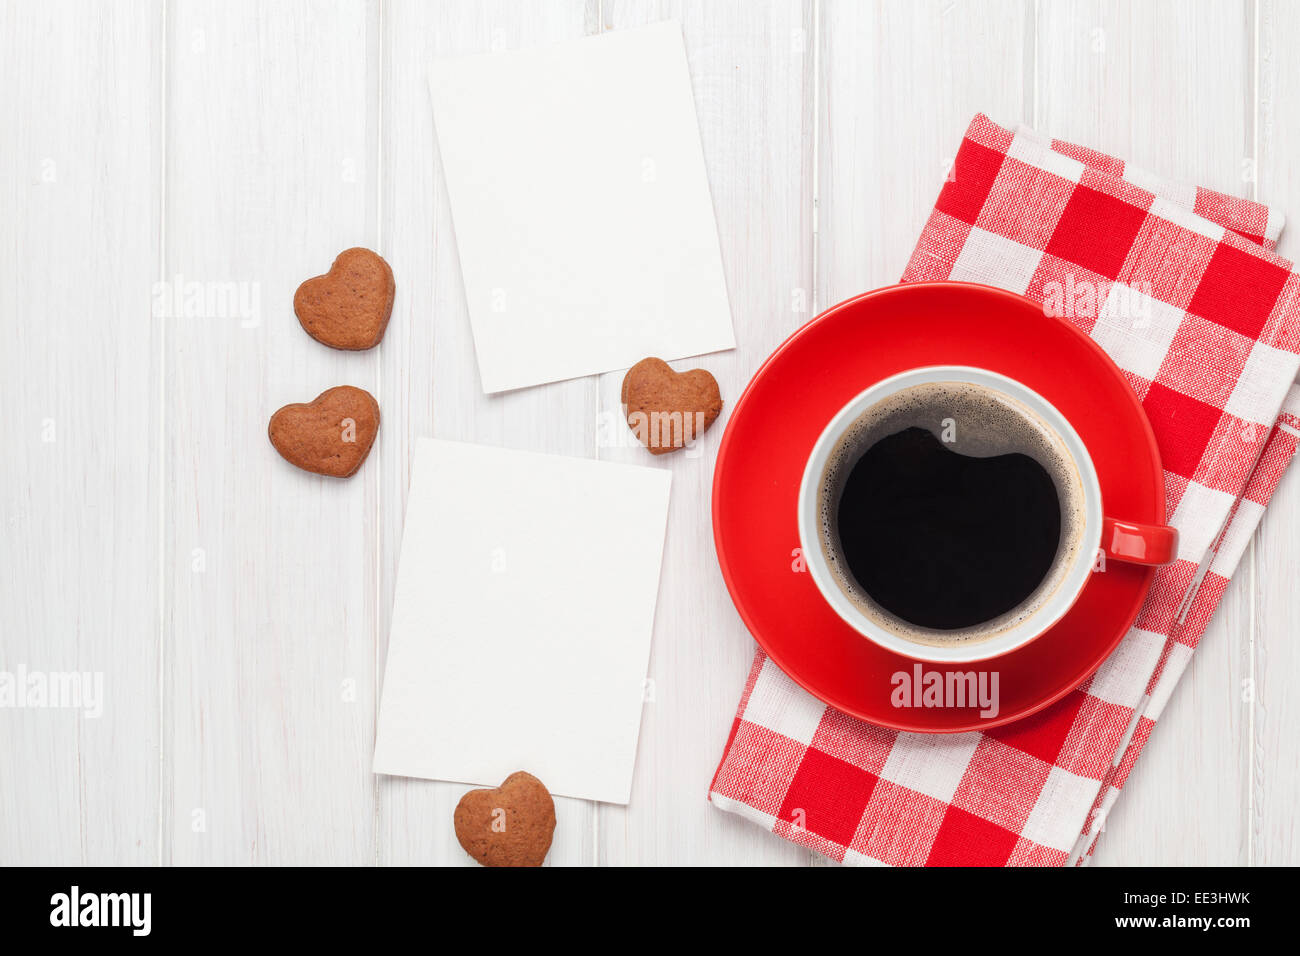 San Valentín en marcos de fotos en blanco, taza de café y galletas en forma de corazón sobre mesa de madera blanca Foto de stock